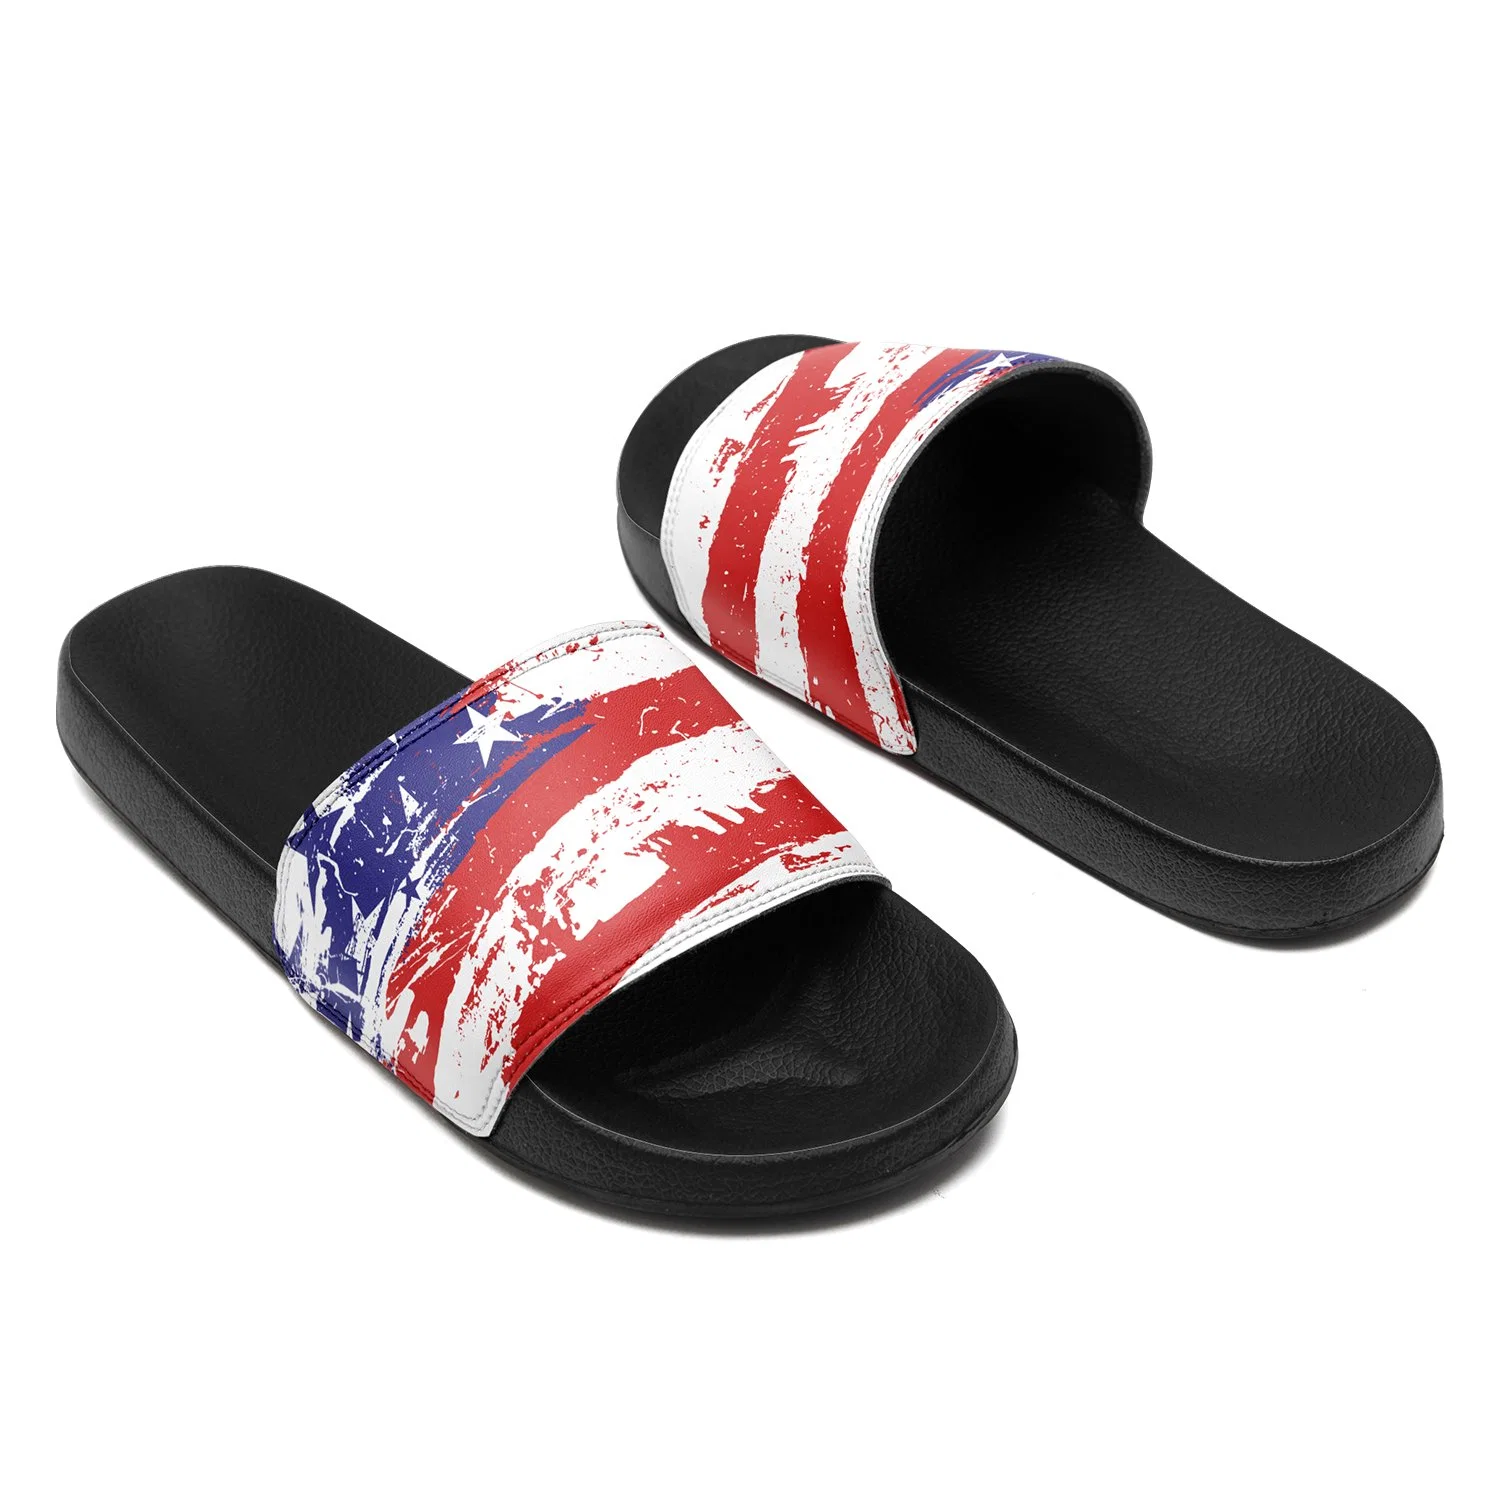 Custom Unisex Slide Sandals Slip on Athletic Sport Slides Wholesale/Supplier Dropshipping Slippers